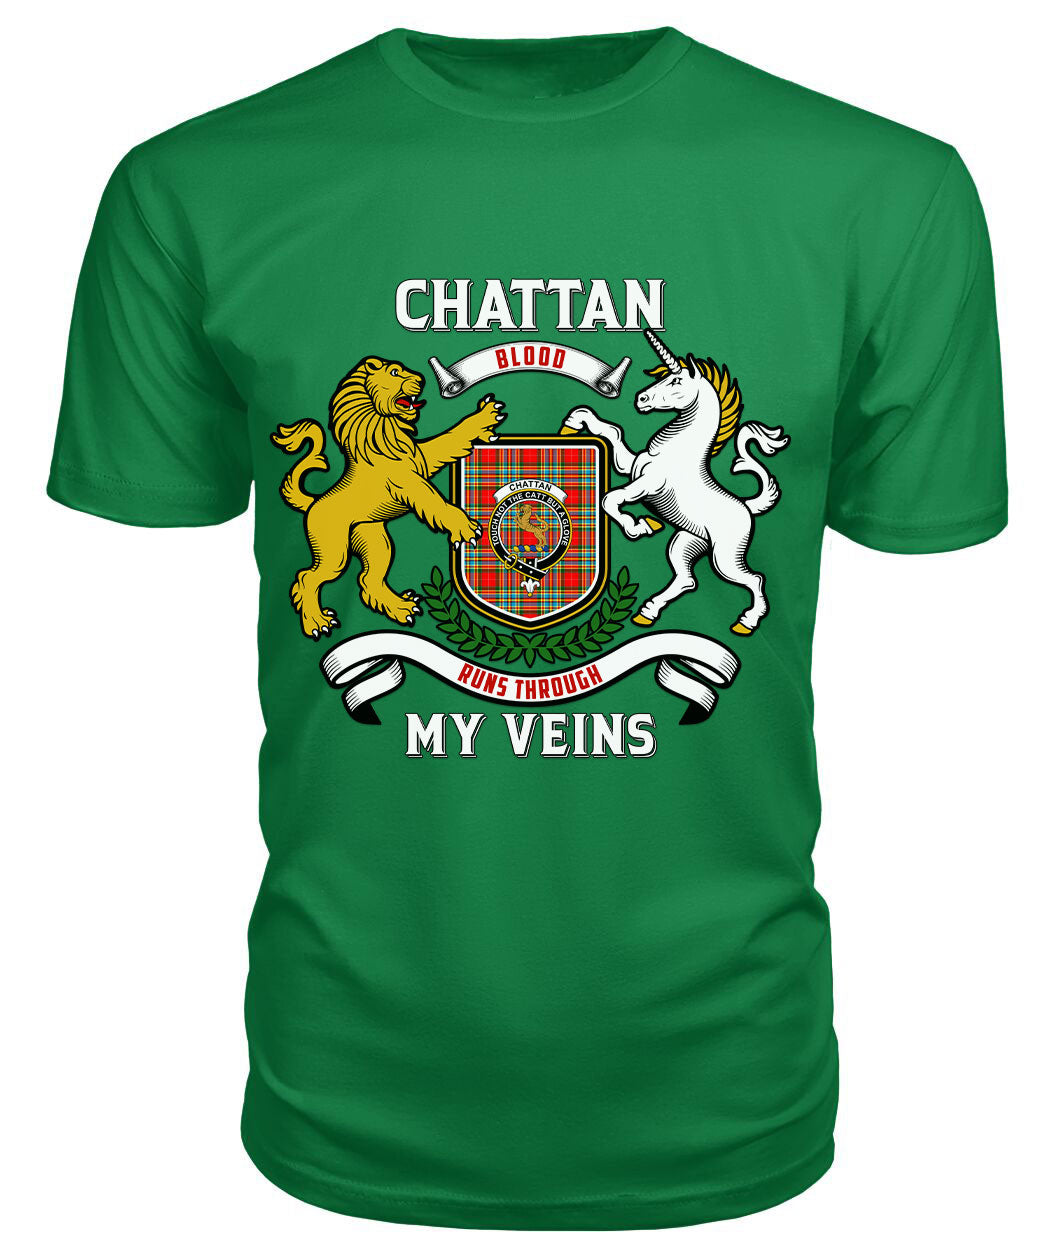 Chattan Tartan Crest 2D T-shirt - Blood Runs Through My Veins Style